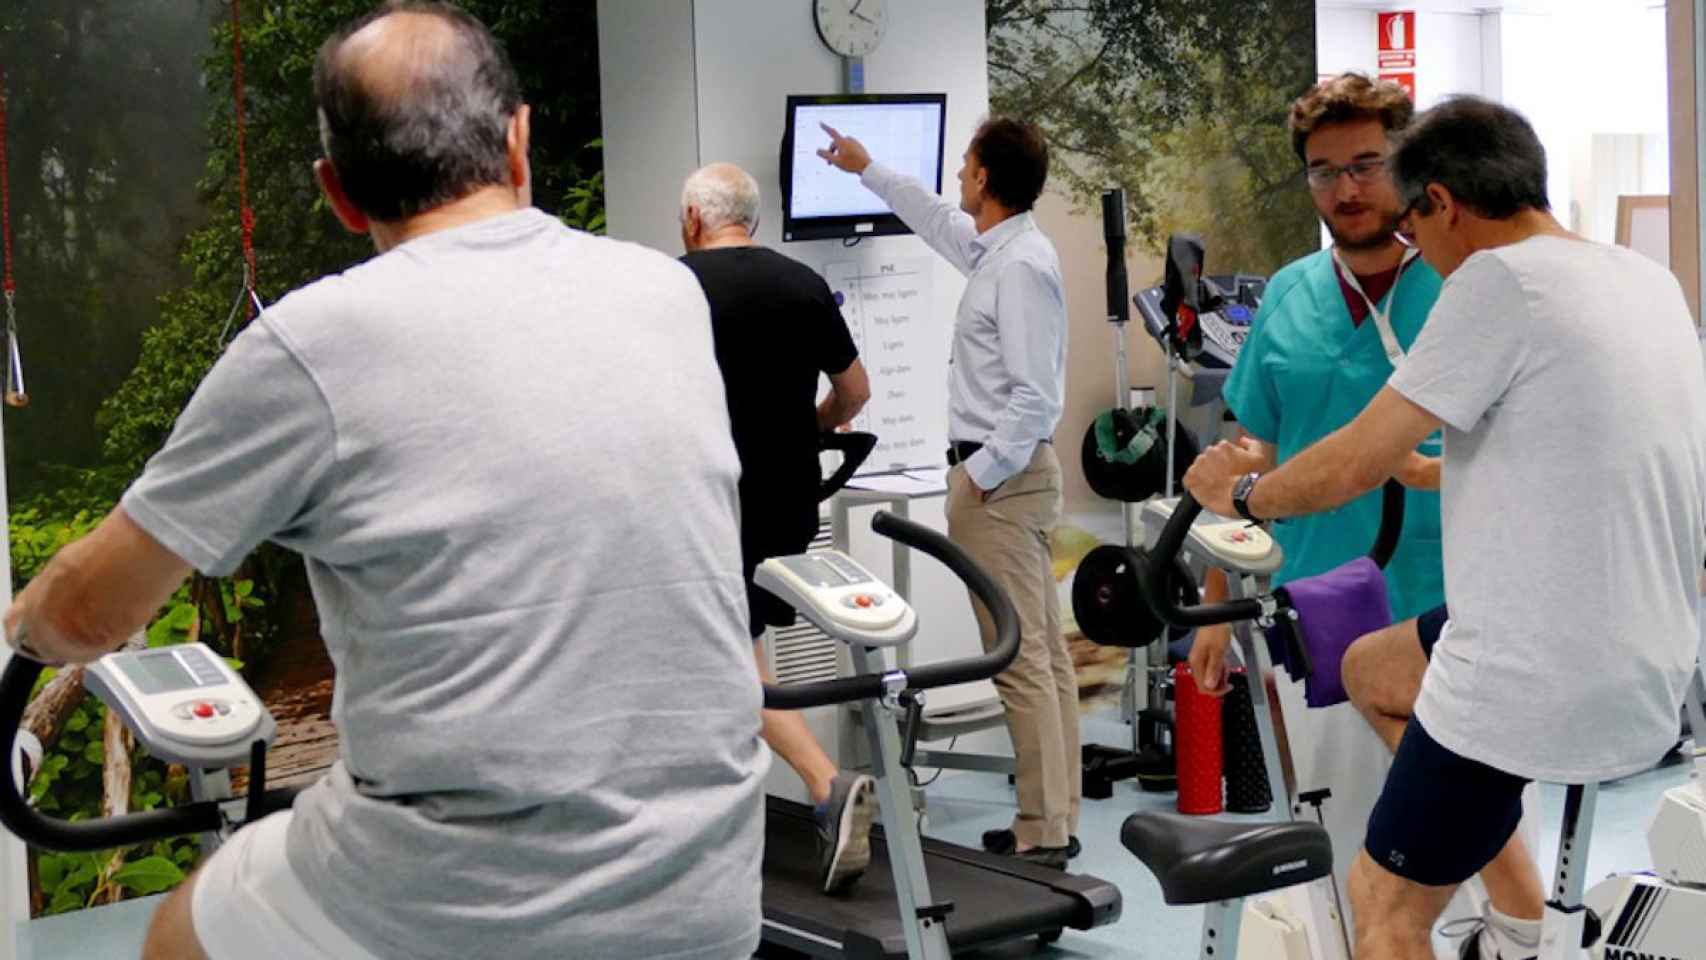 Un médico controla a varios hombres mientras hacen deporte: la actividad física mejora la calidad de vida / QUIRÓNSALUD